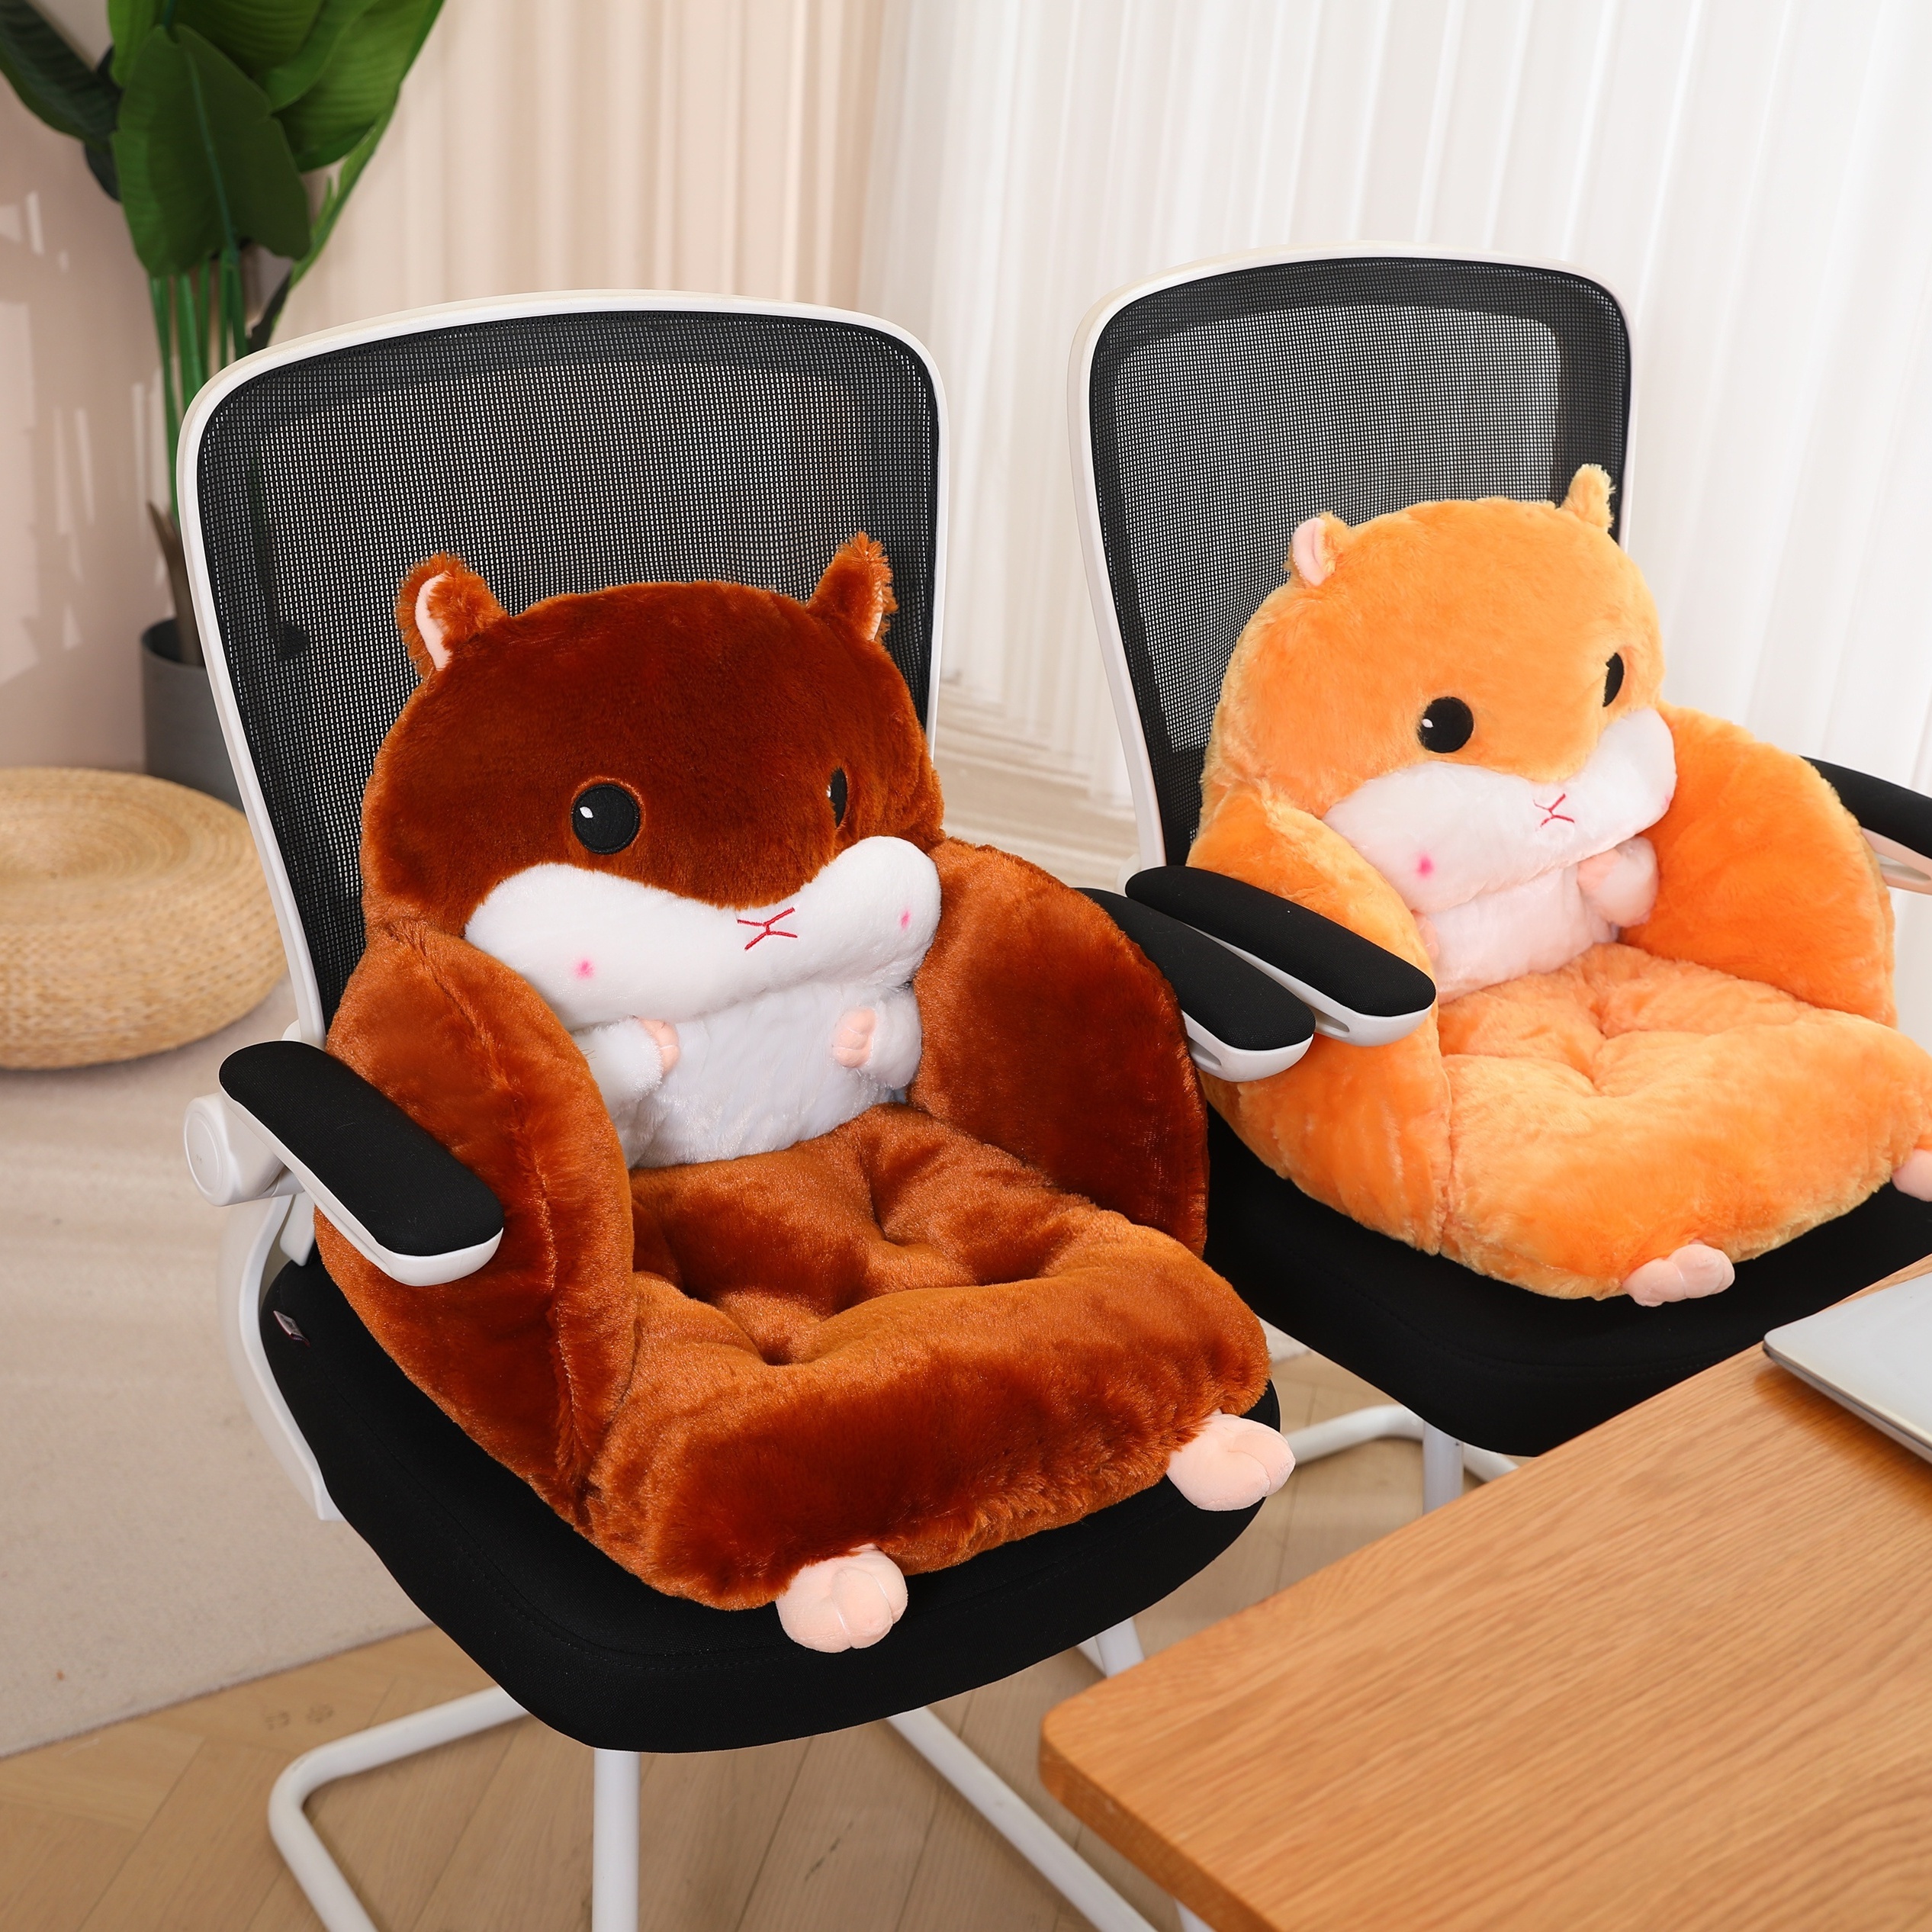 Hamster cushion sofa cushion chair cushion stool butt pad cushion